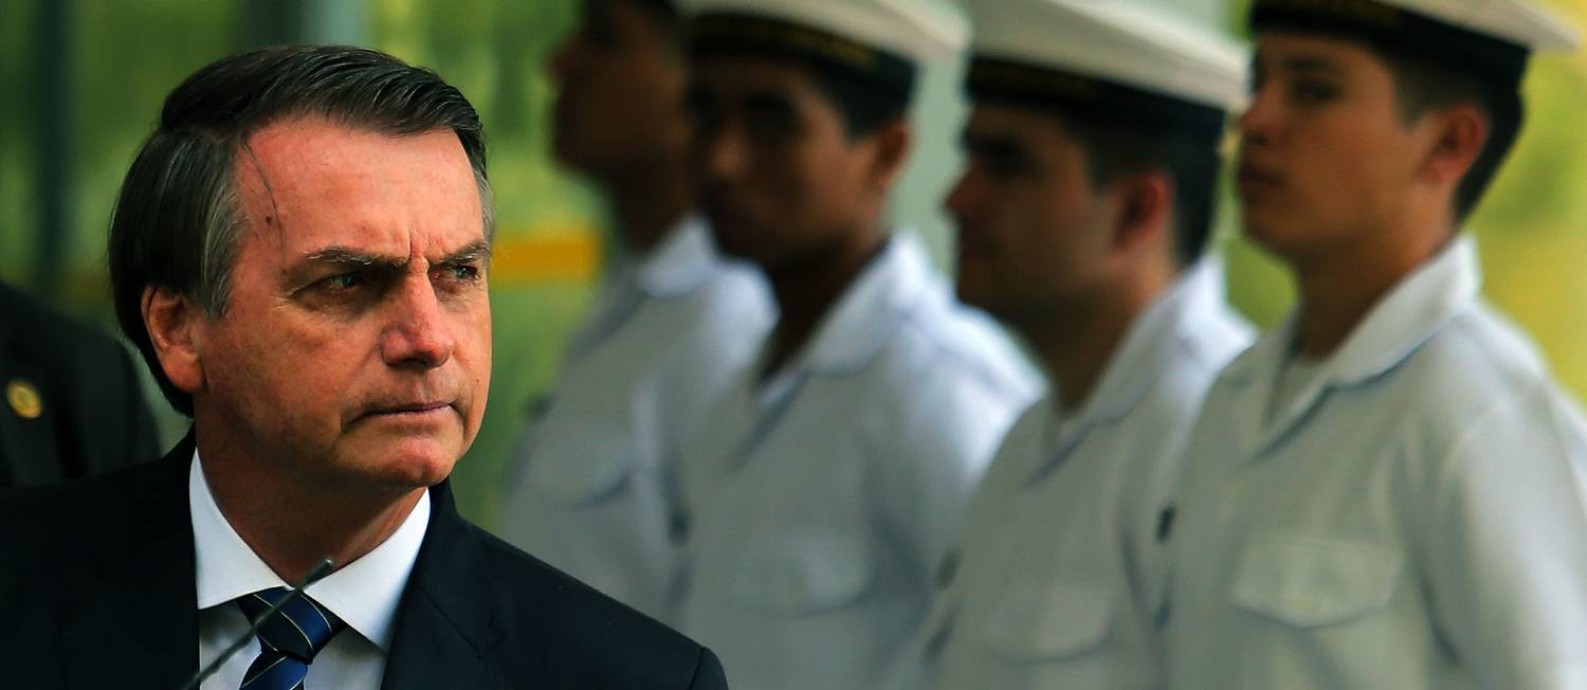 O presidente Jair Bolsonaro, em visita ao Ministério da Marinha Foto: Jorge William / Agência O Globo